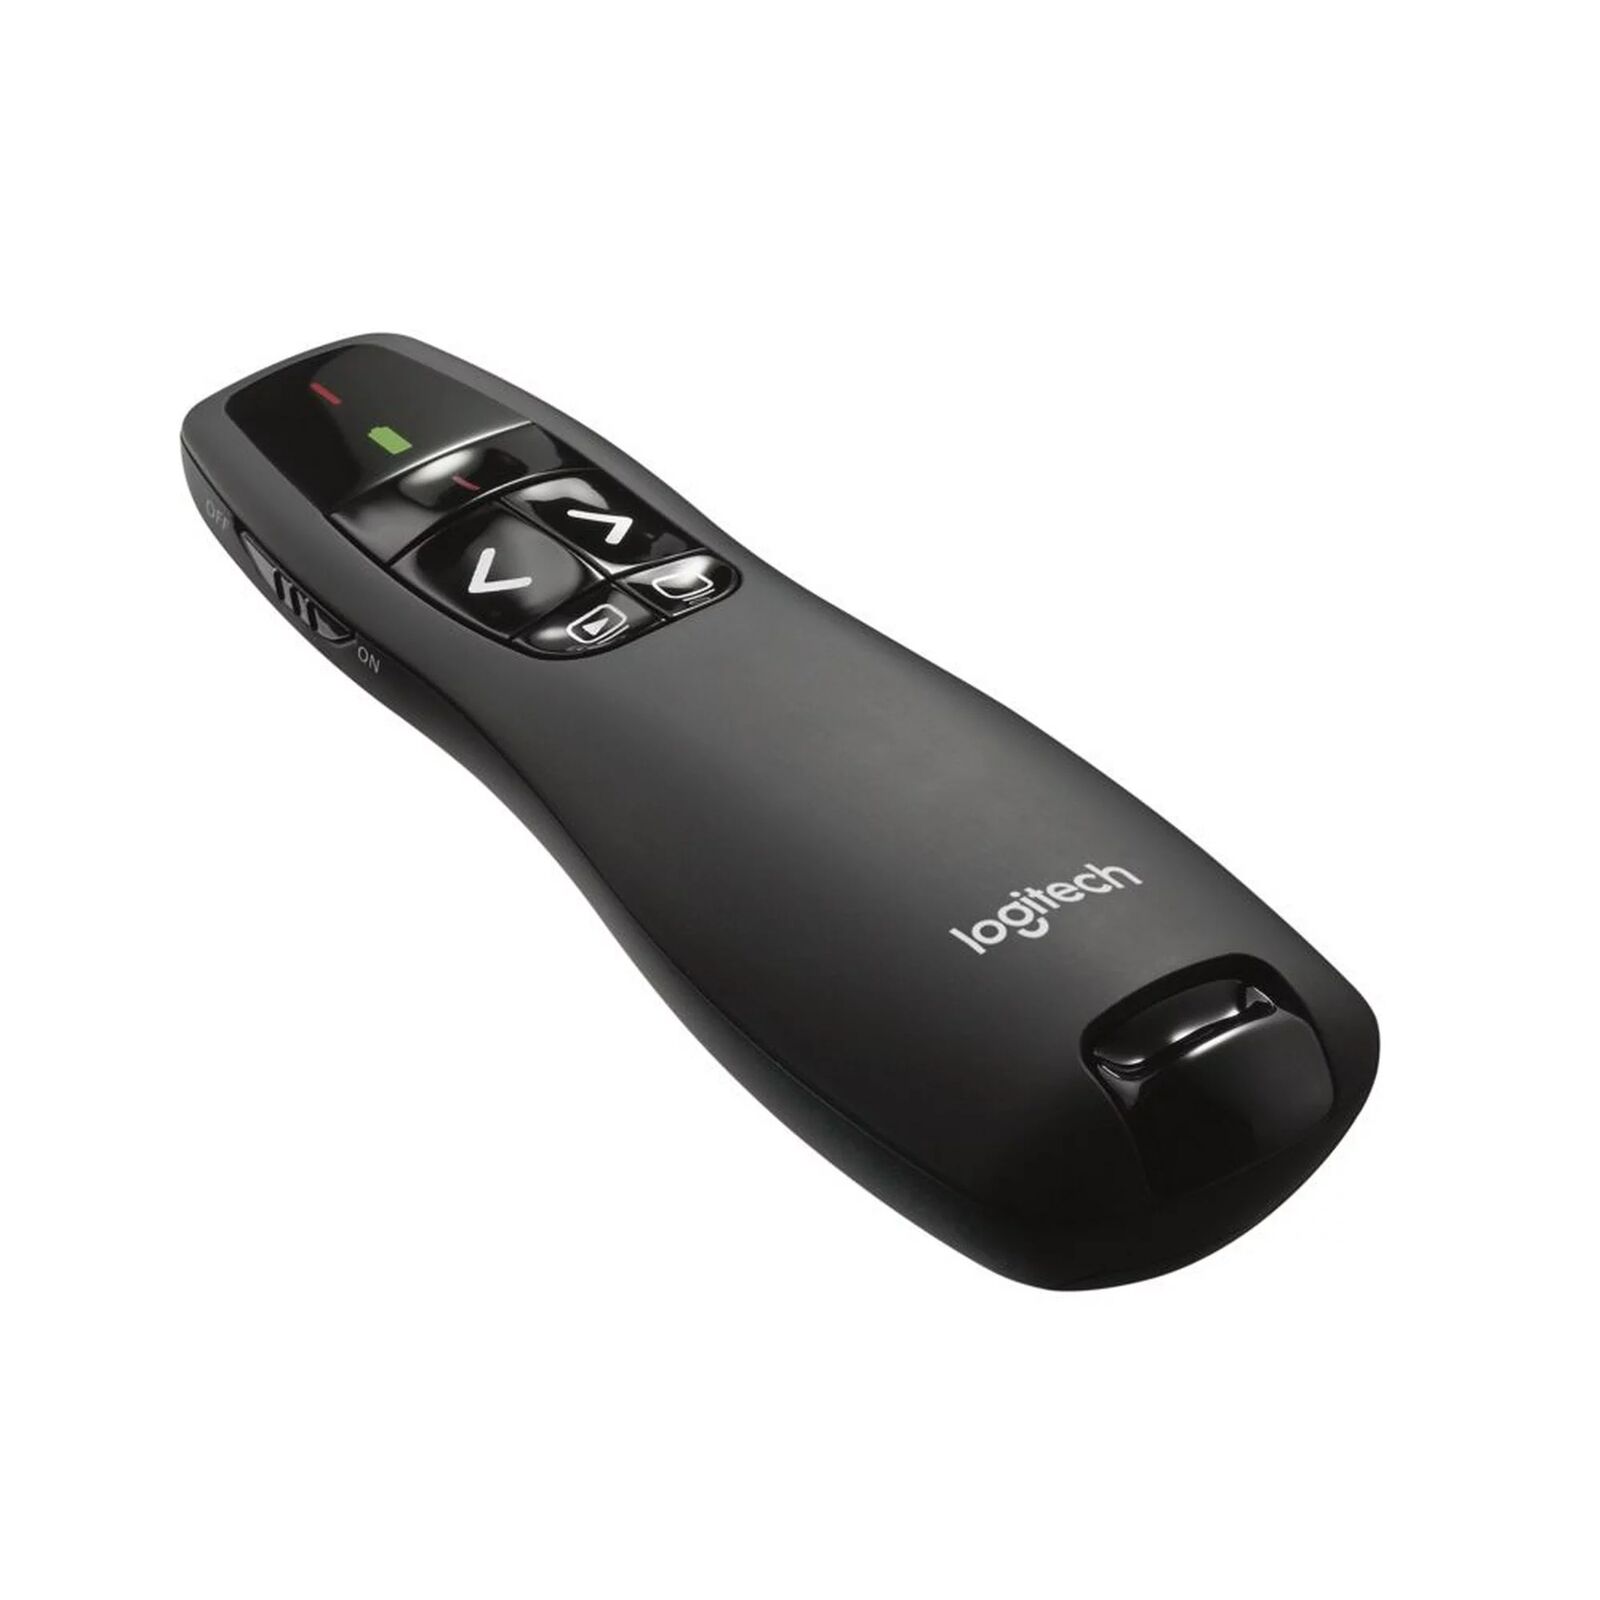 Logitech Wireless Presenter R400, Presentation Remote Clicker Laser Pointer